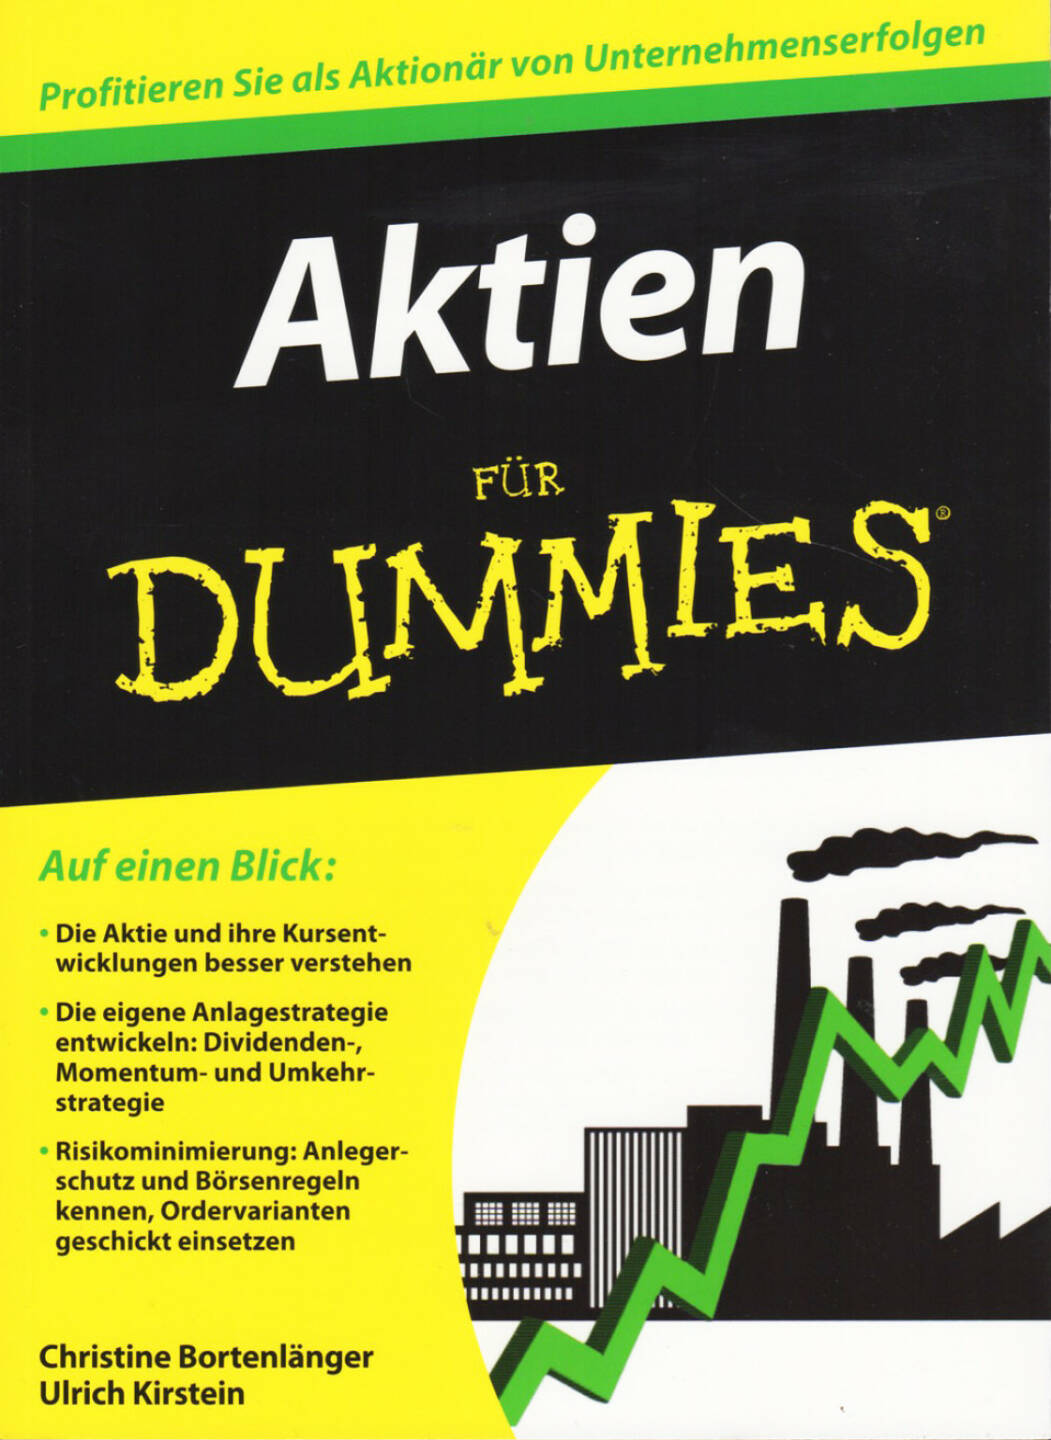 Christine Bortenlänger & Ulrich Kirstein - Aktien für Dummies - http://boerse-social.com/financebooks/show/christine_bortenlanger_ulrich_kirstein_-_aktien_fur_dummies